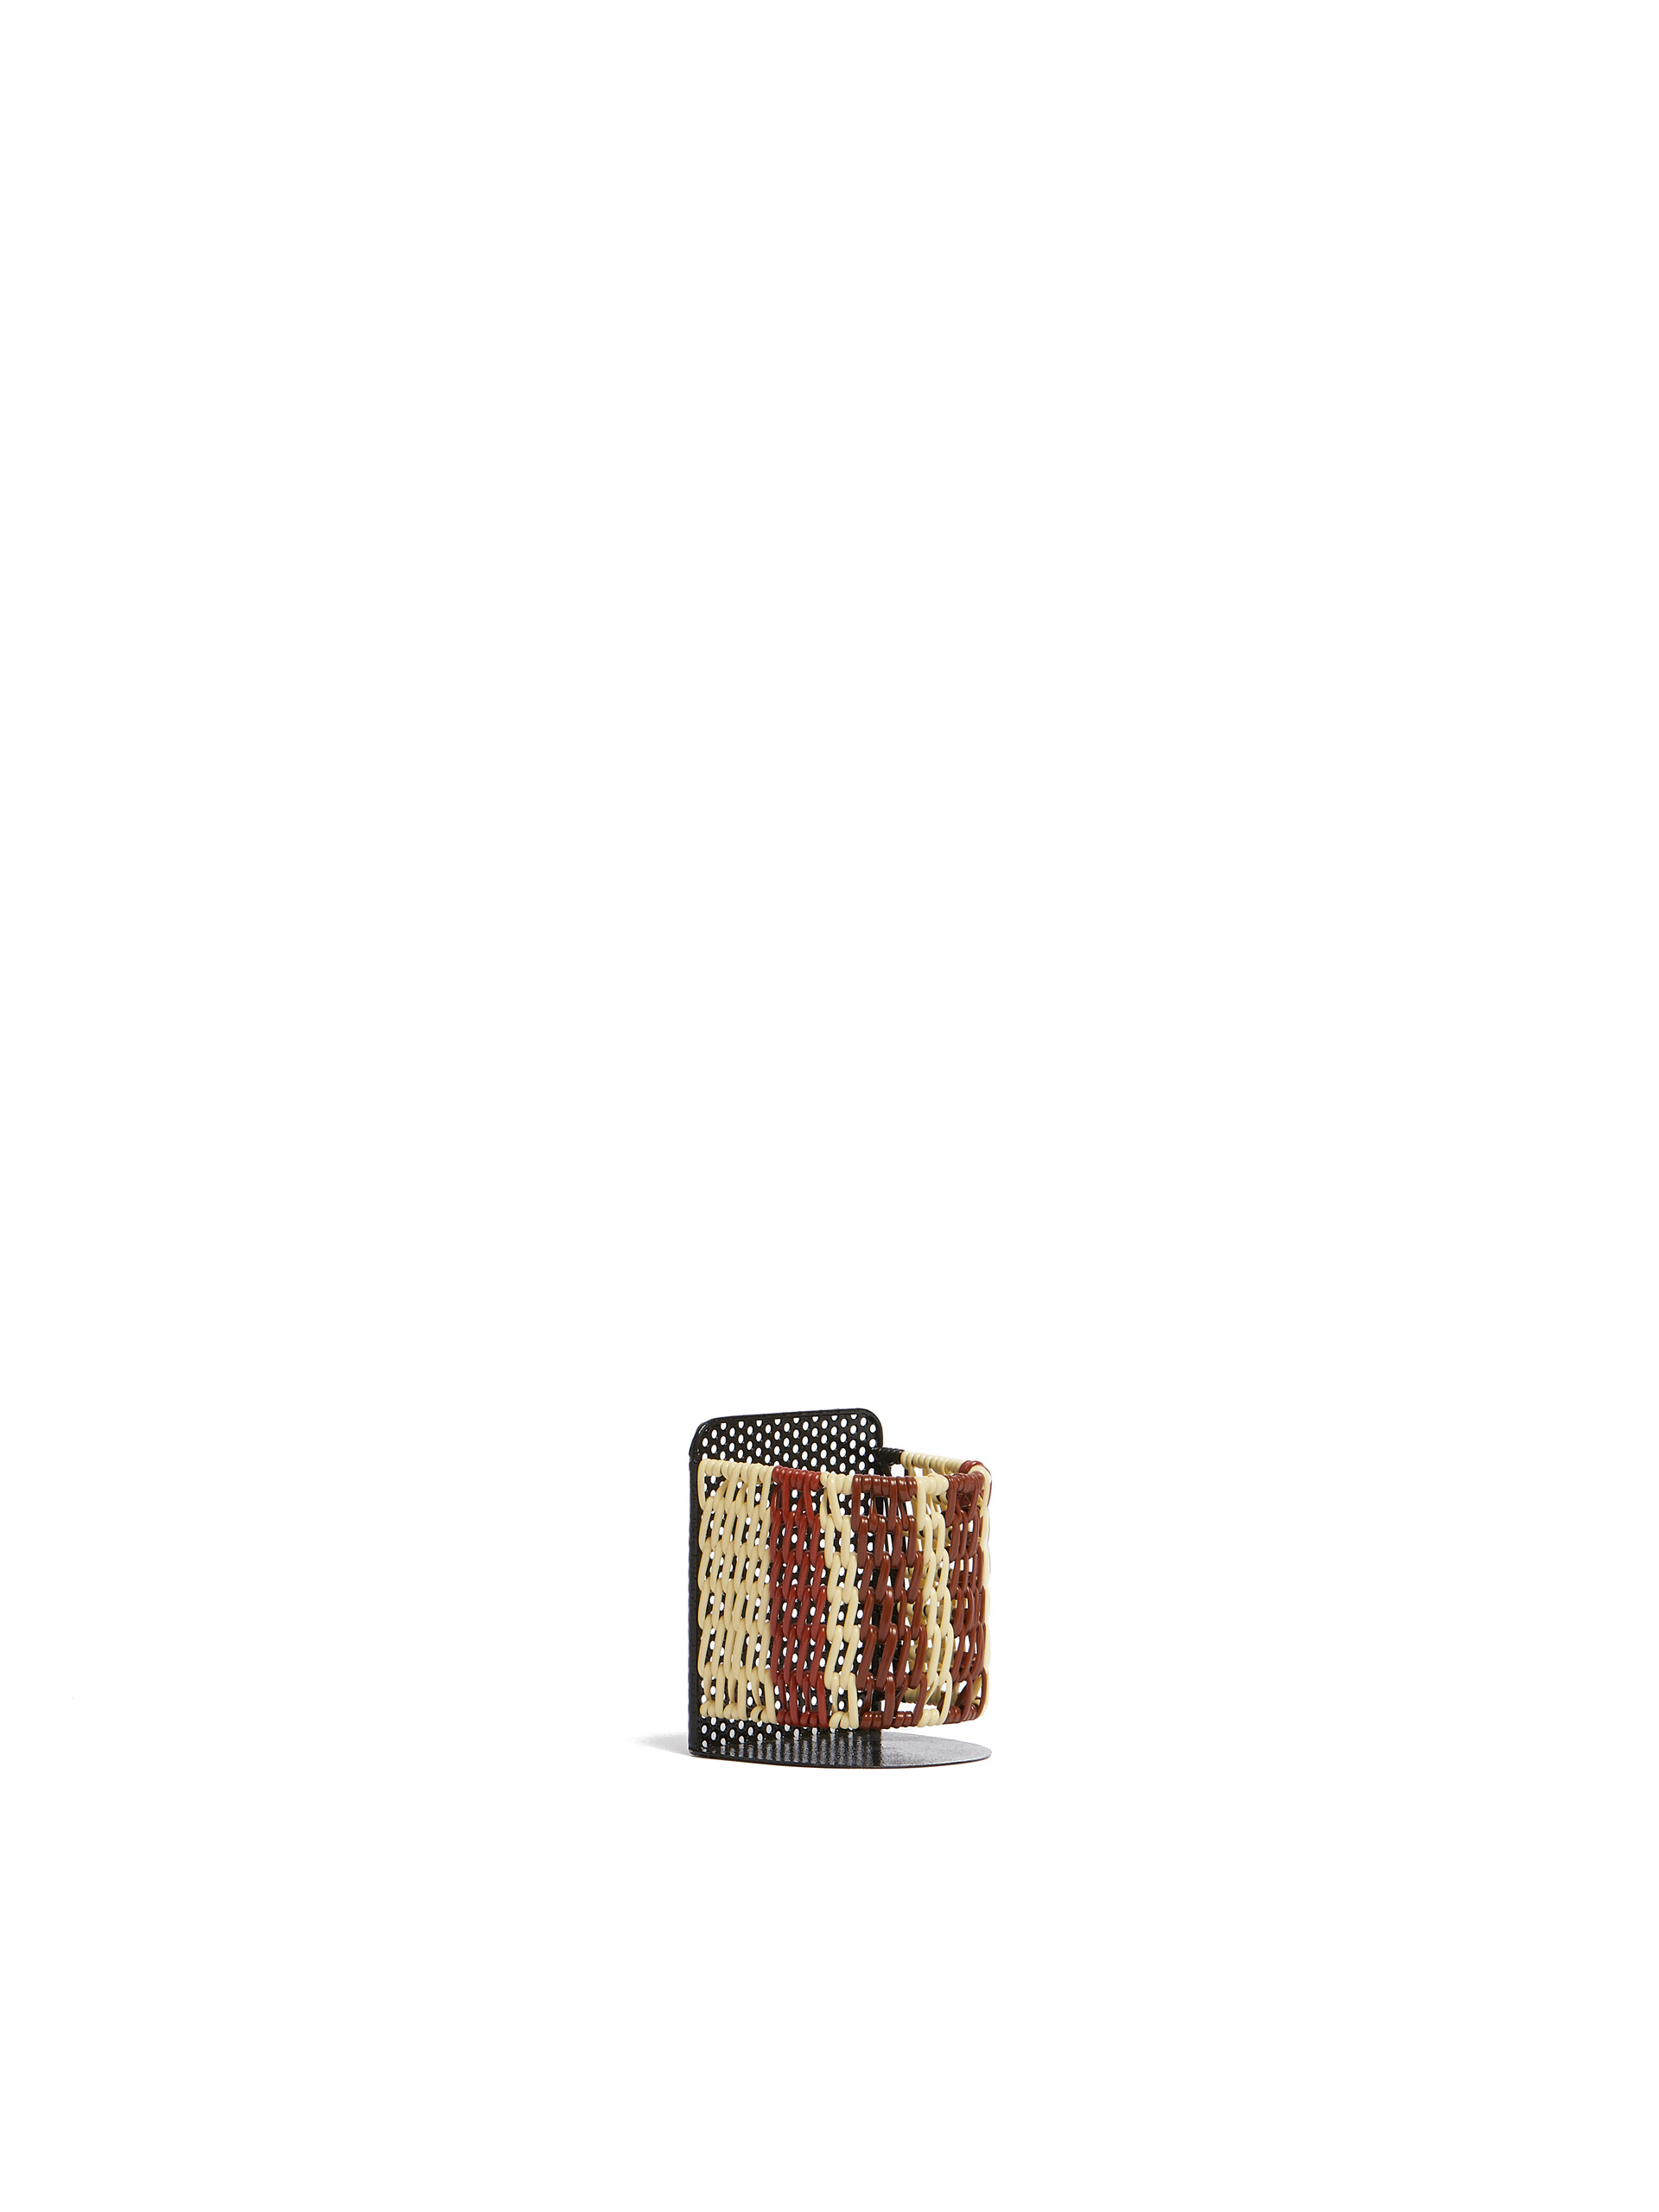 Pot à crayons Scoubidou noir Marni Market - Mobilier - Image 2